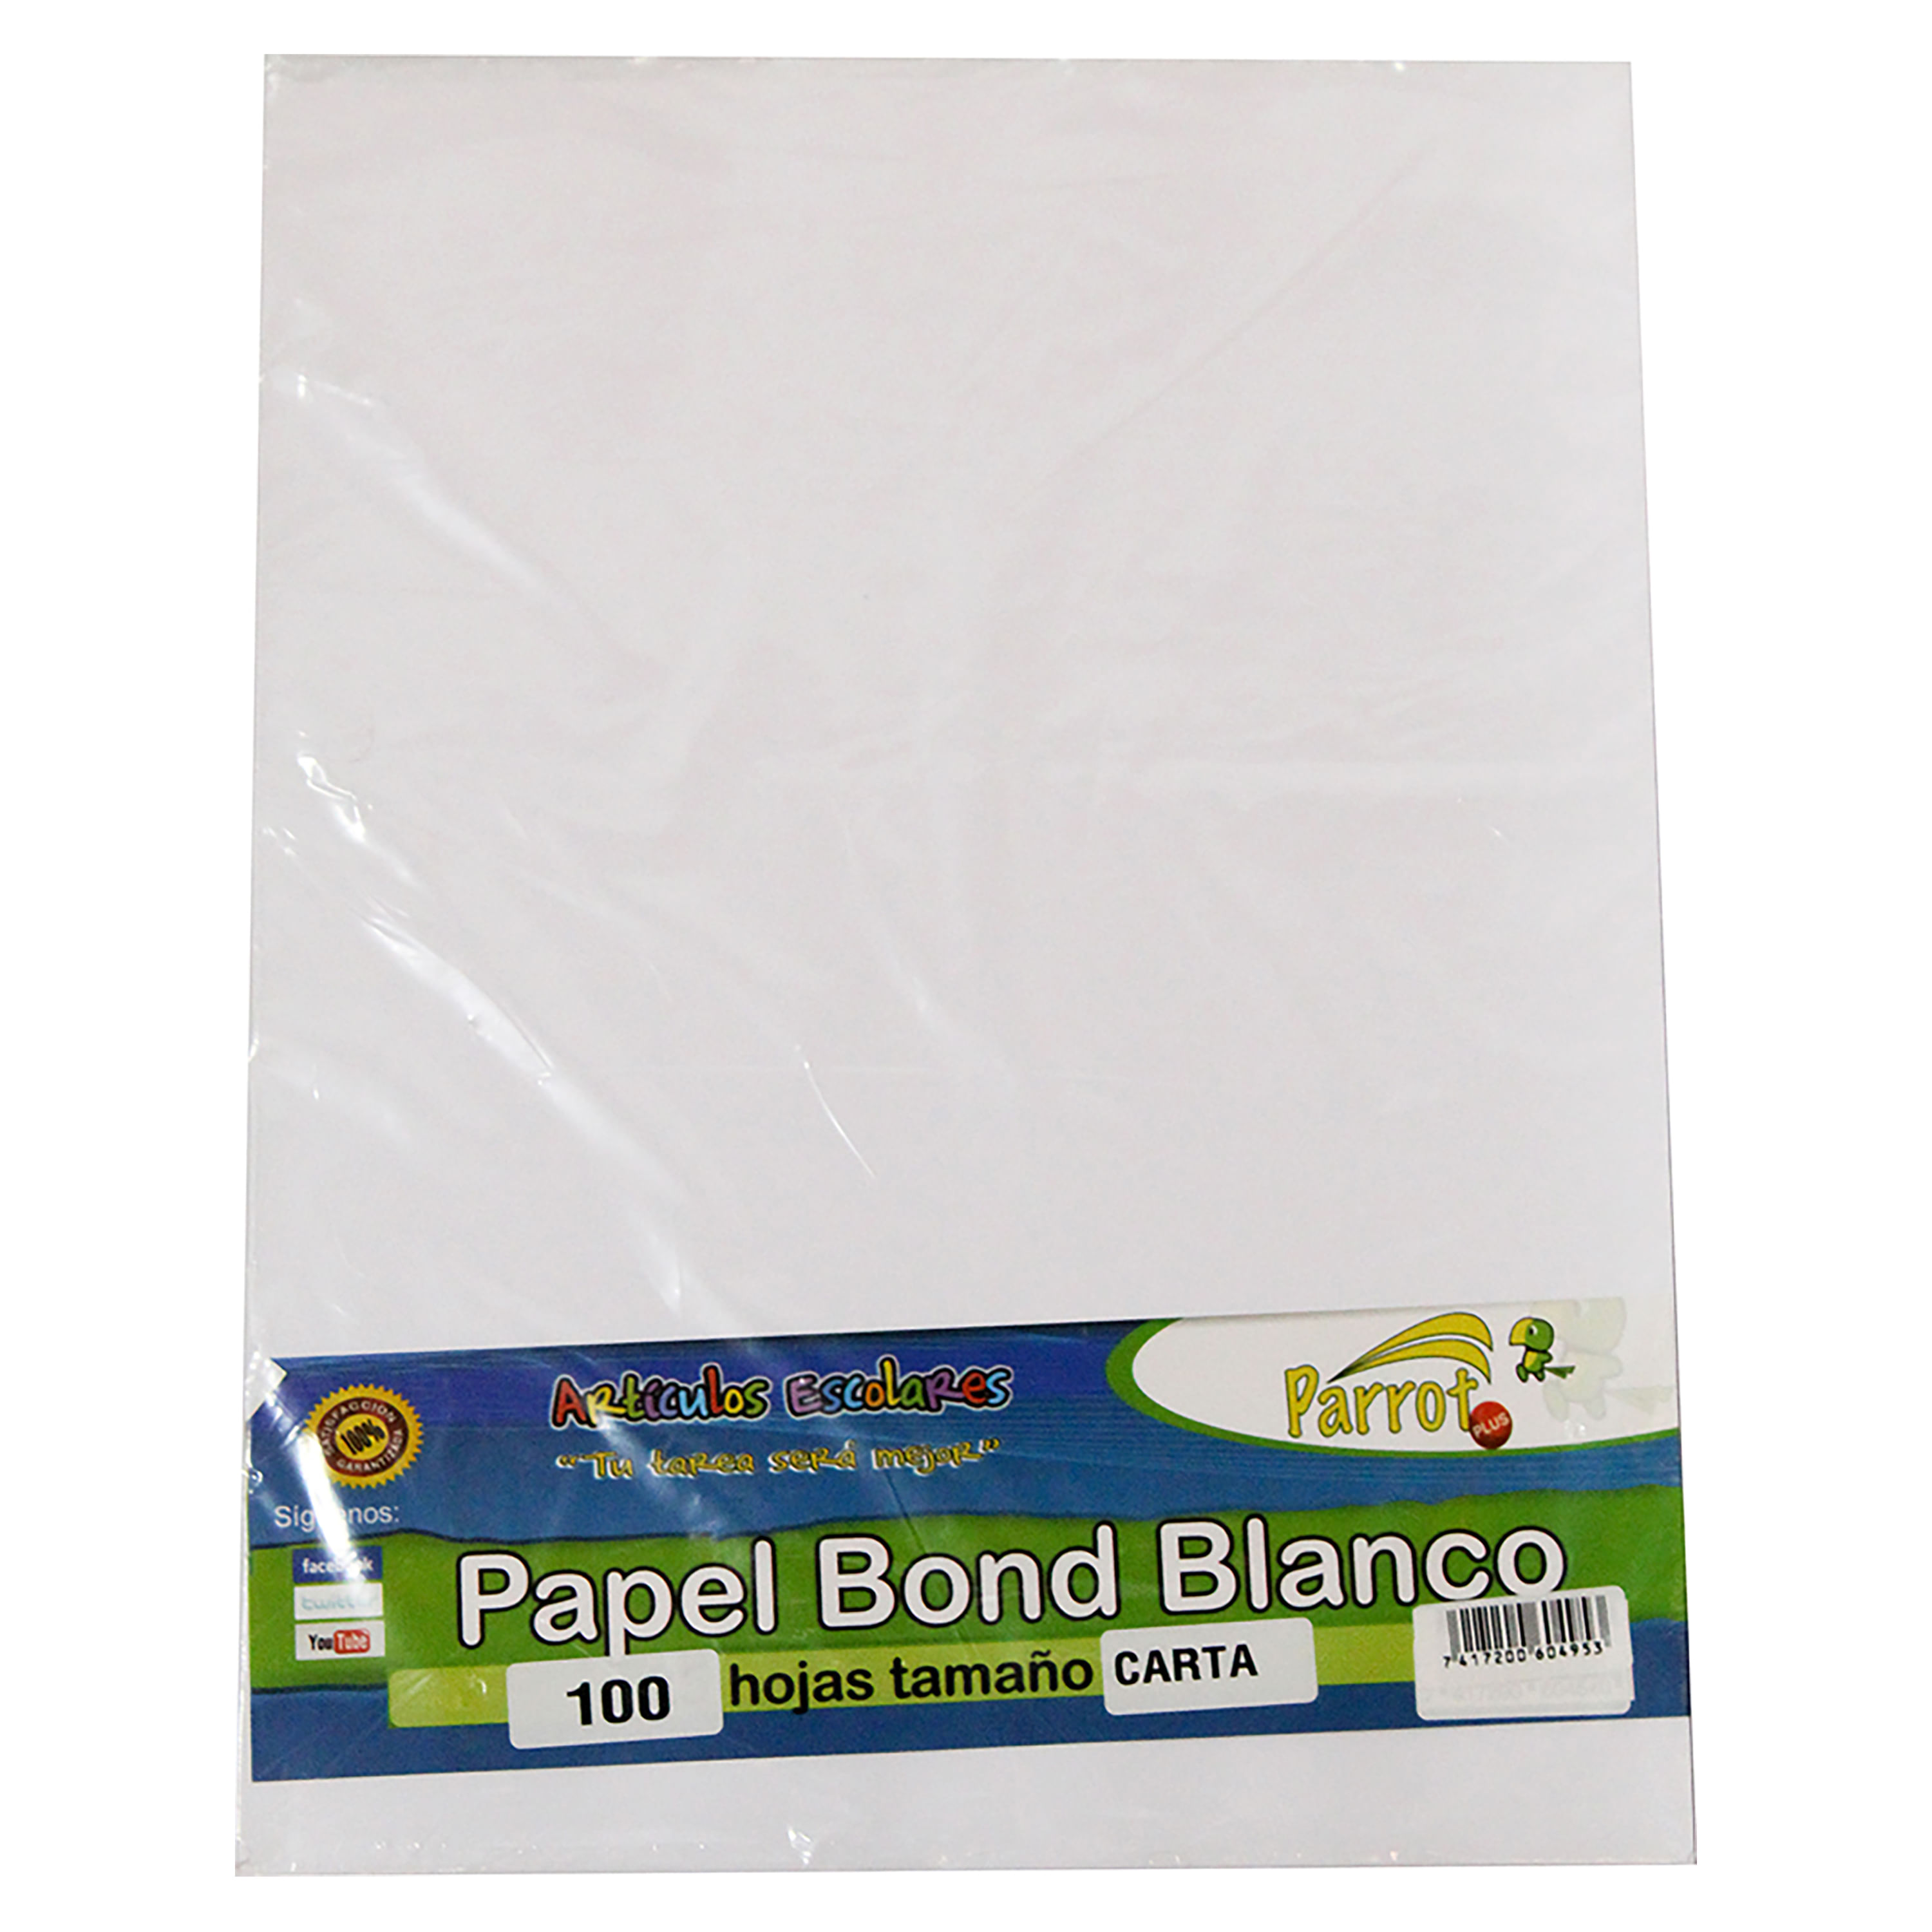 Grabar Silenciosamente He reconocido Comprar Hojas Blancas Bond Tamano Carta | Walmart El Salvador